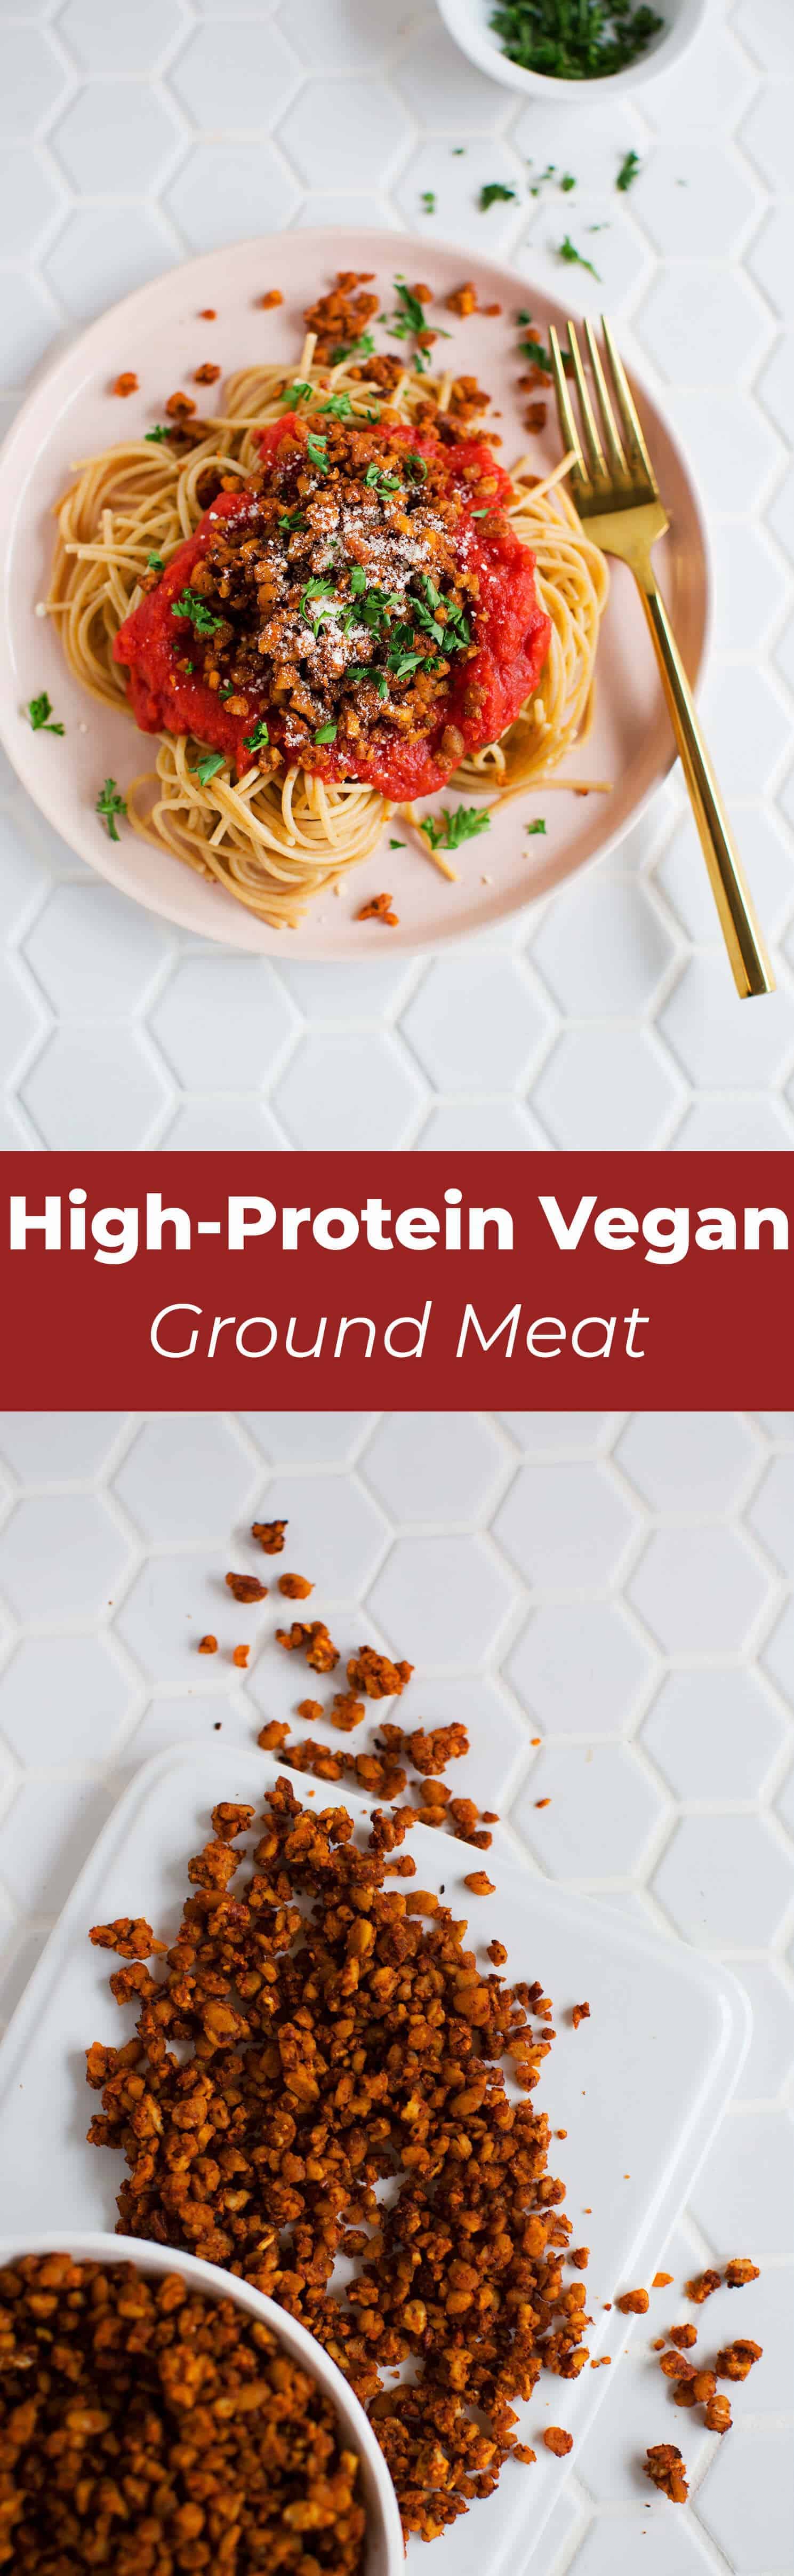 high protein vegan ground meat recipe